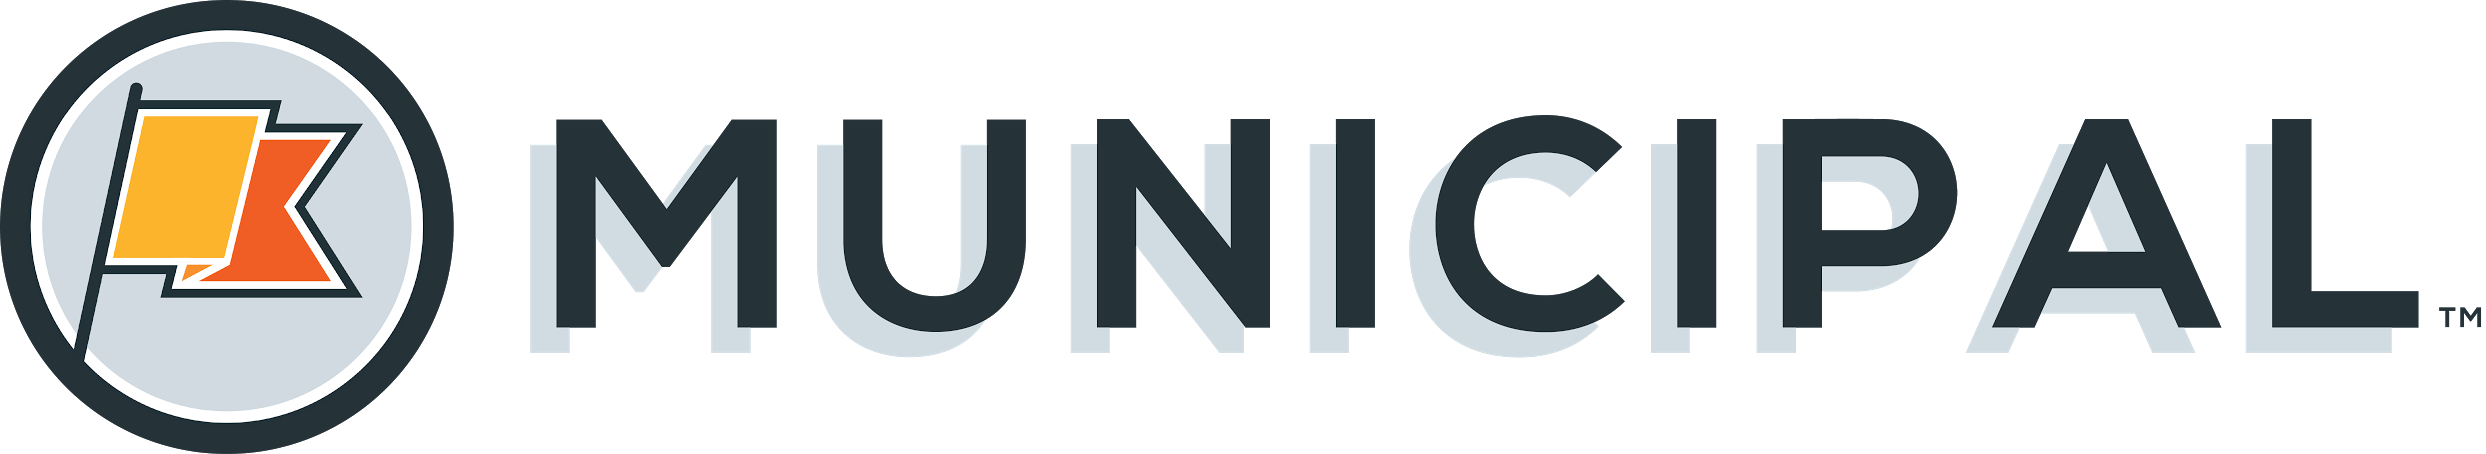 Municipal logo name.png